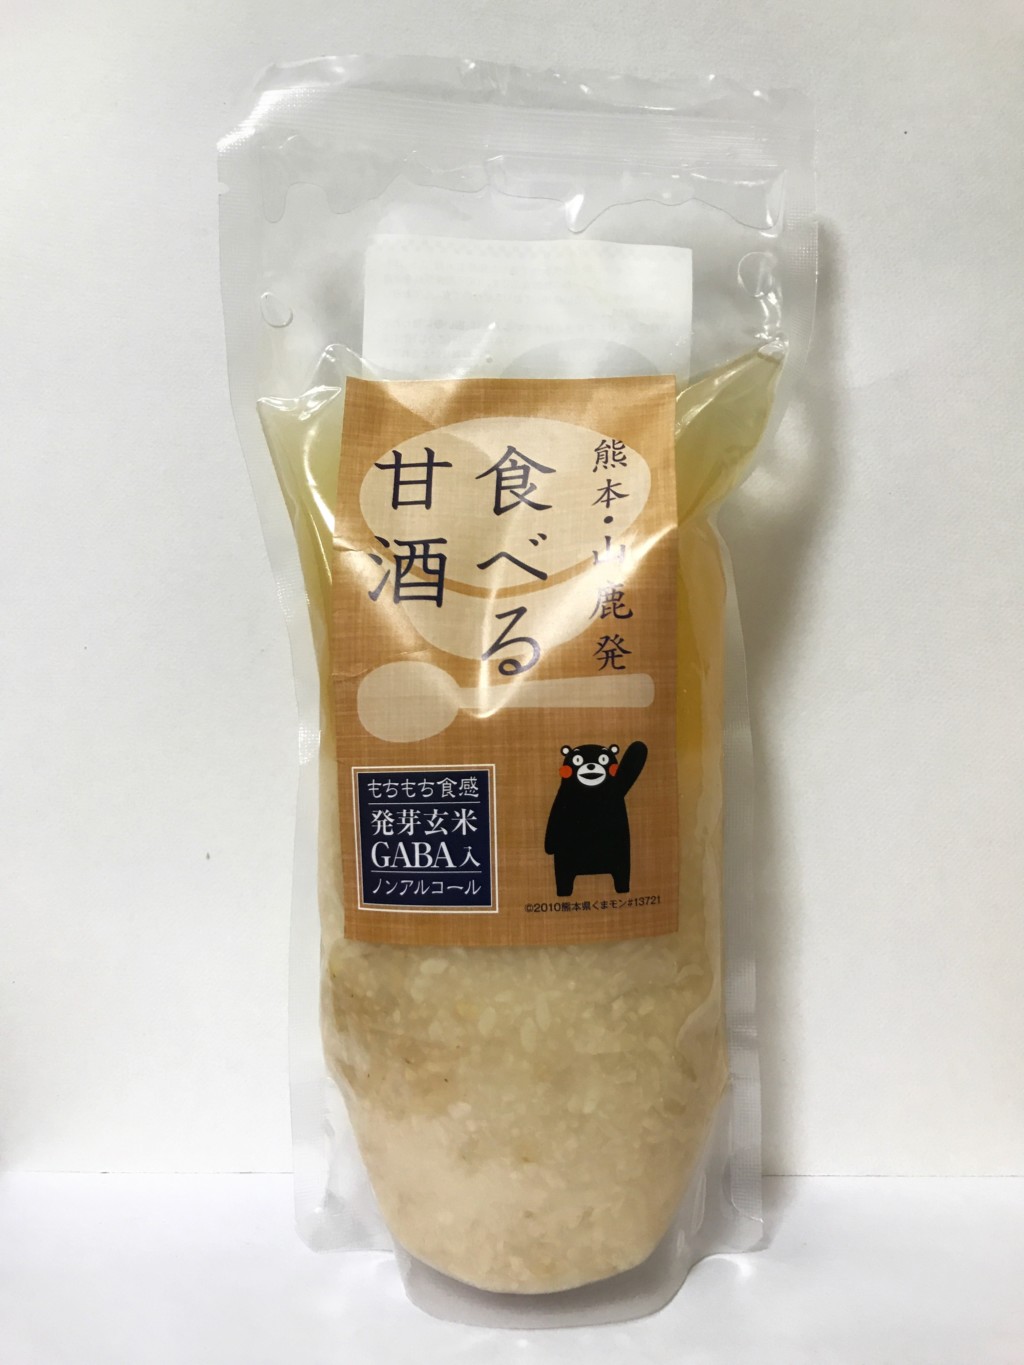 原田食品製造所の米麹甘酒『食べる甘酒』